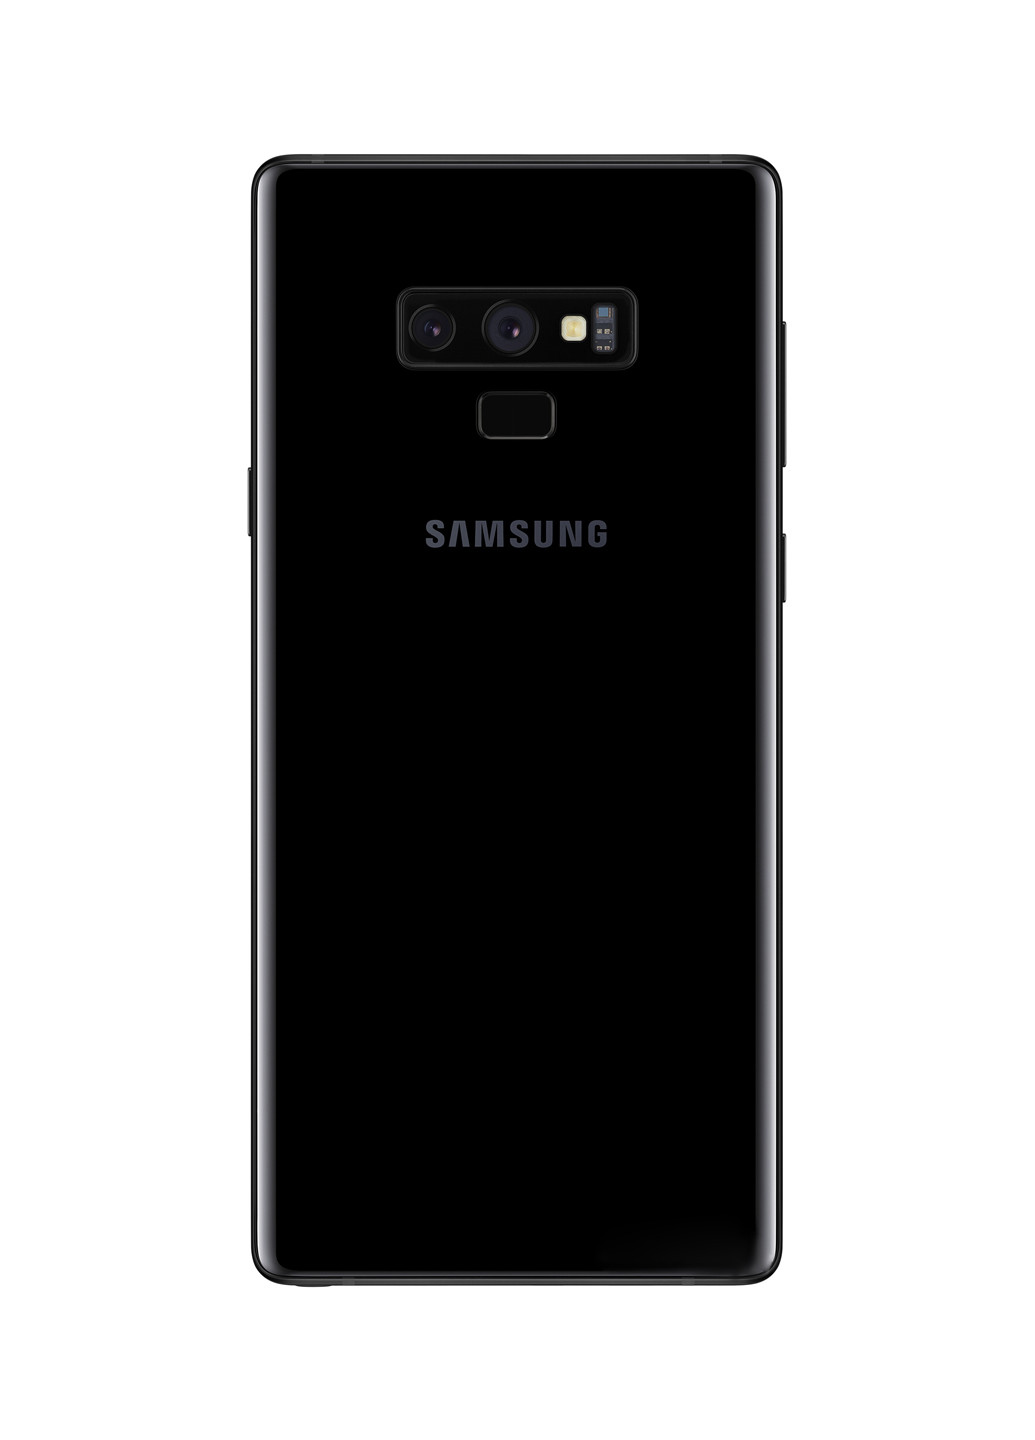 Смартфон Galaxy Note 9 6 / 128Gb Black (SM-N960FZKDSEK) Samsung Galaxy Note 9 6/128Gb Black (SM-N960FZKDSEK) чорний